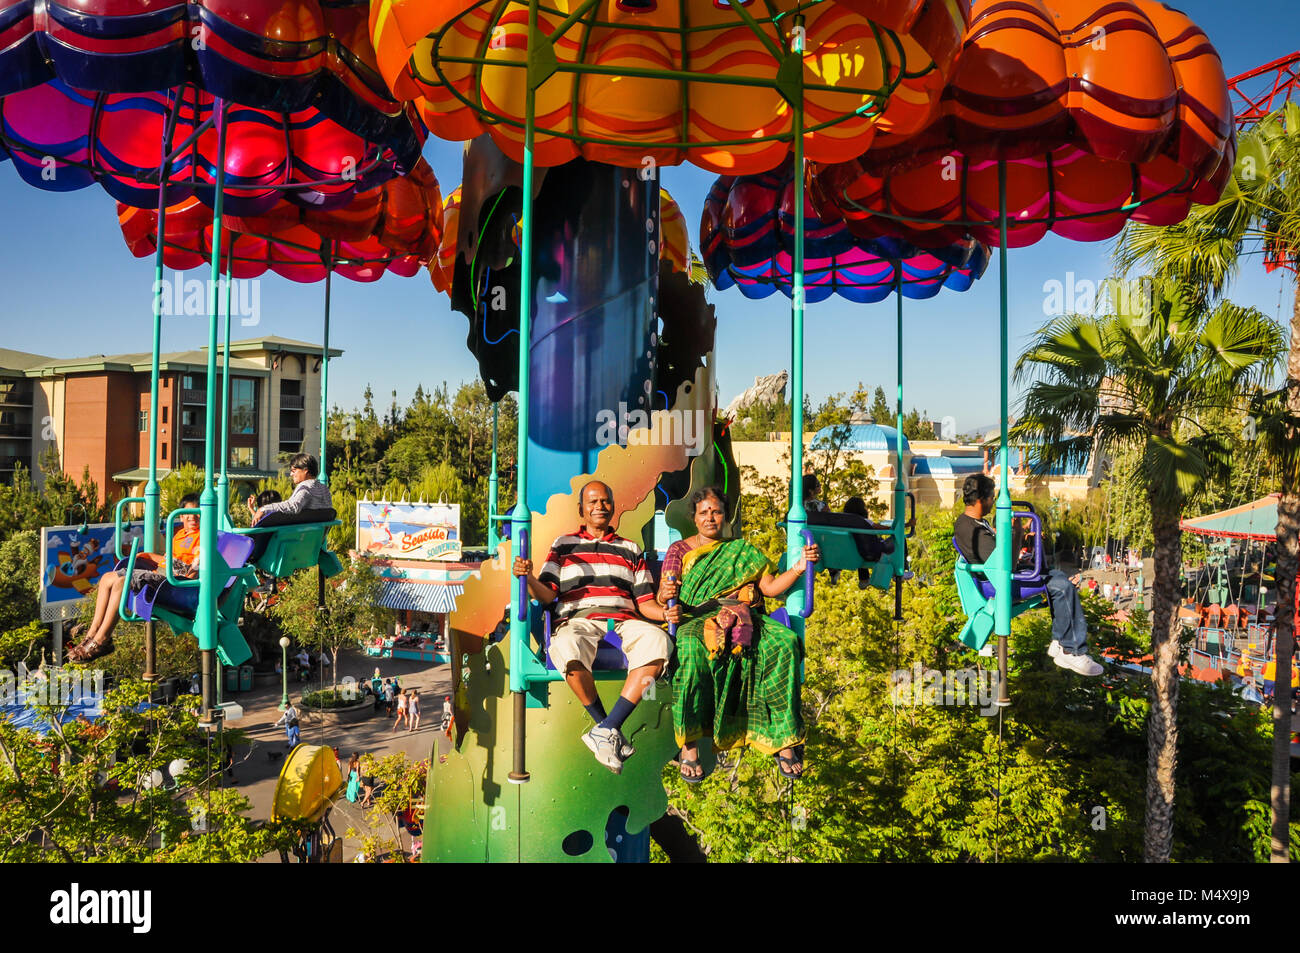 Indische Paare, die Frau, gekleidet in einem grünen Sari, reiten Sie die Jumpin' Quallen paratower Fallschirm Fahrt im Disneyland in Kalifornien. Stockfoto